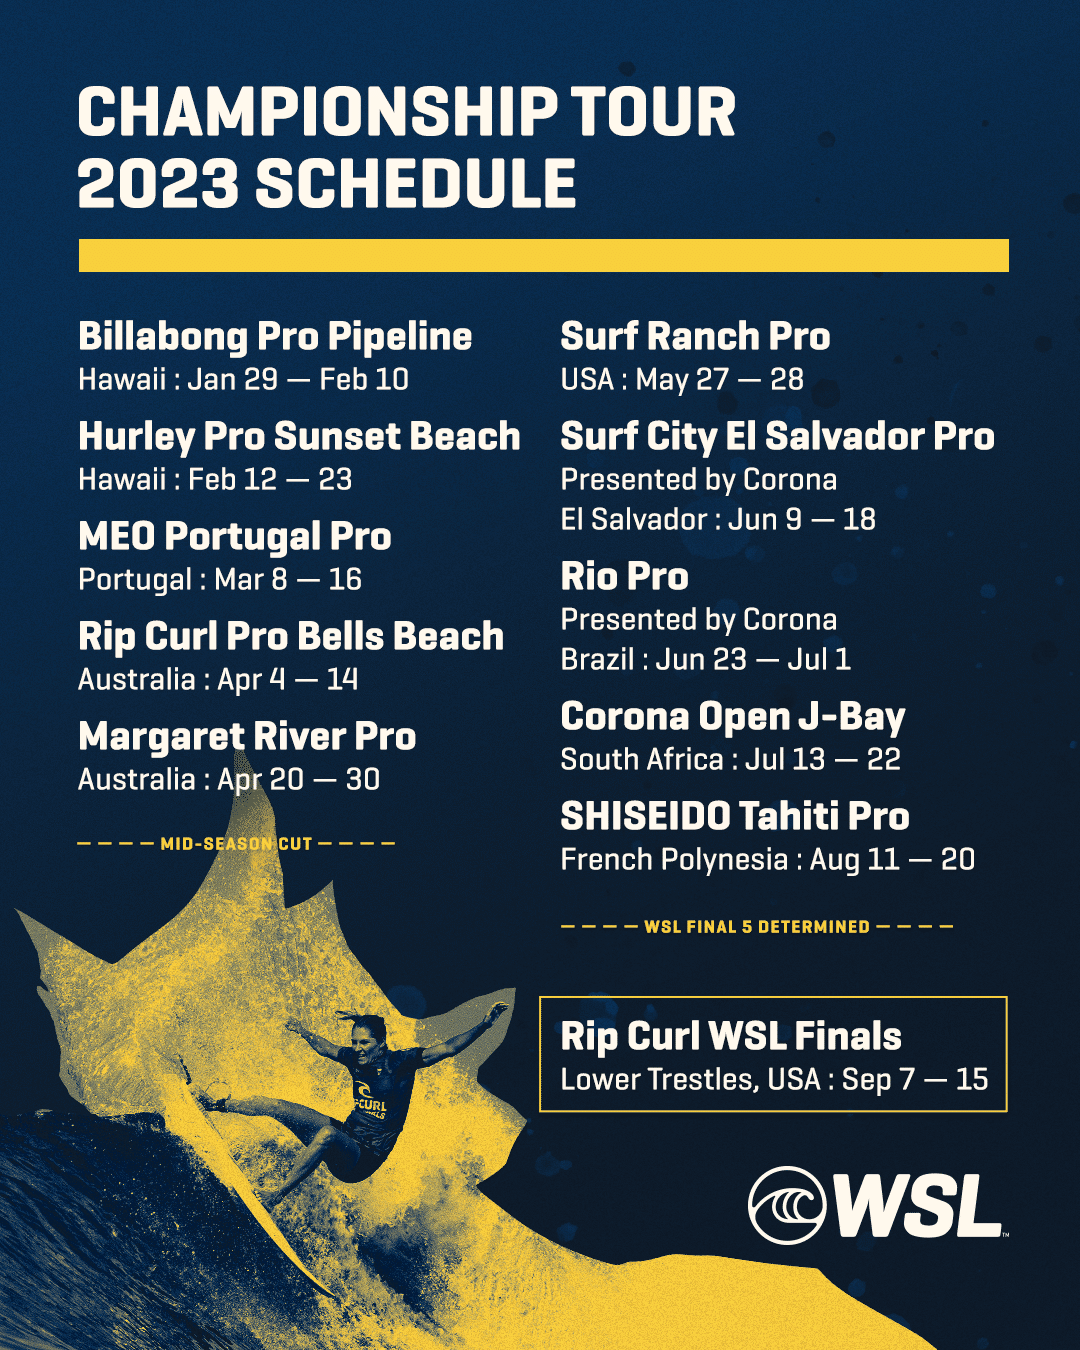 Confira o calendário do Championship Tour da WSL de 2023